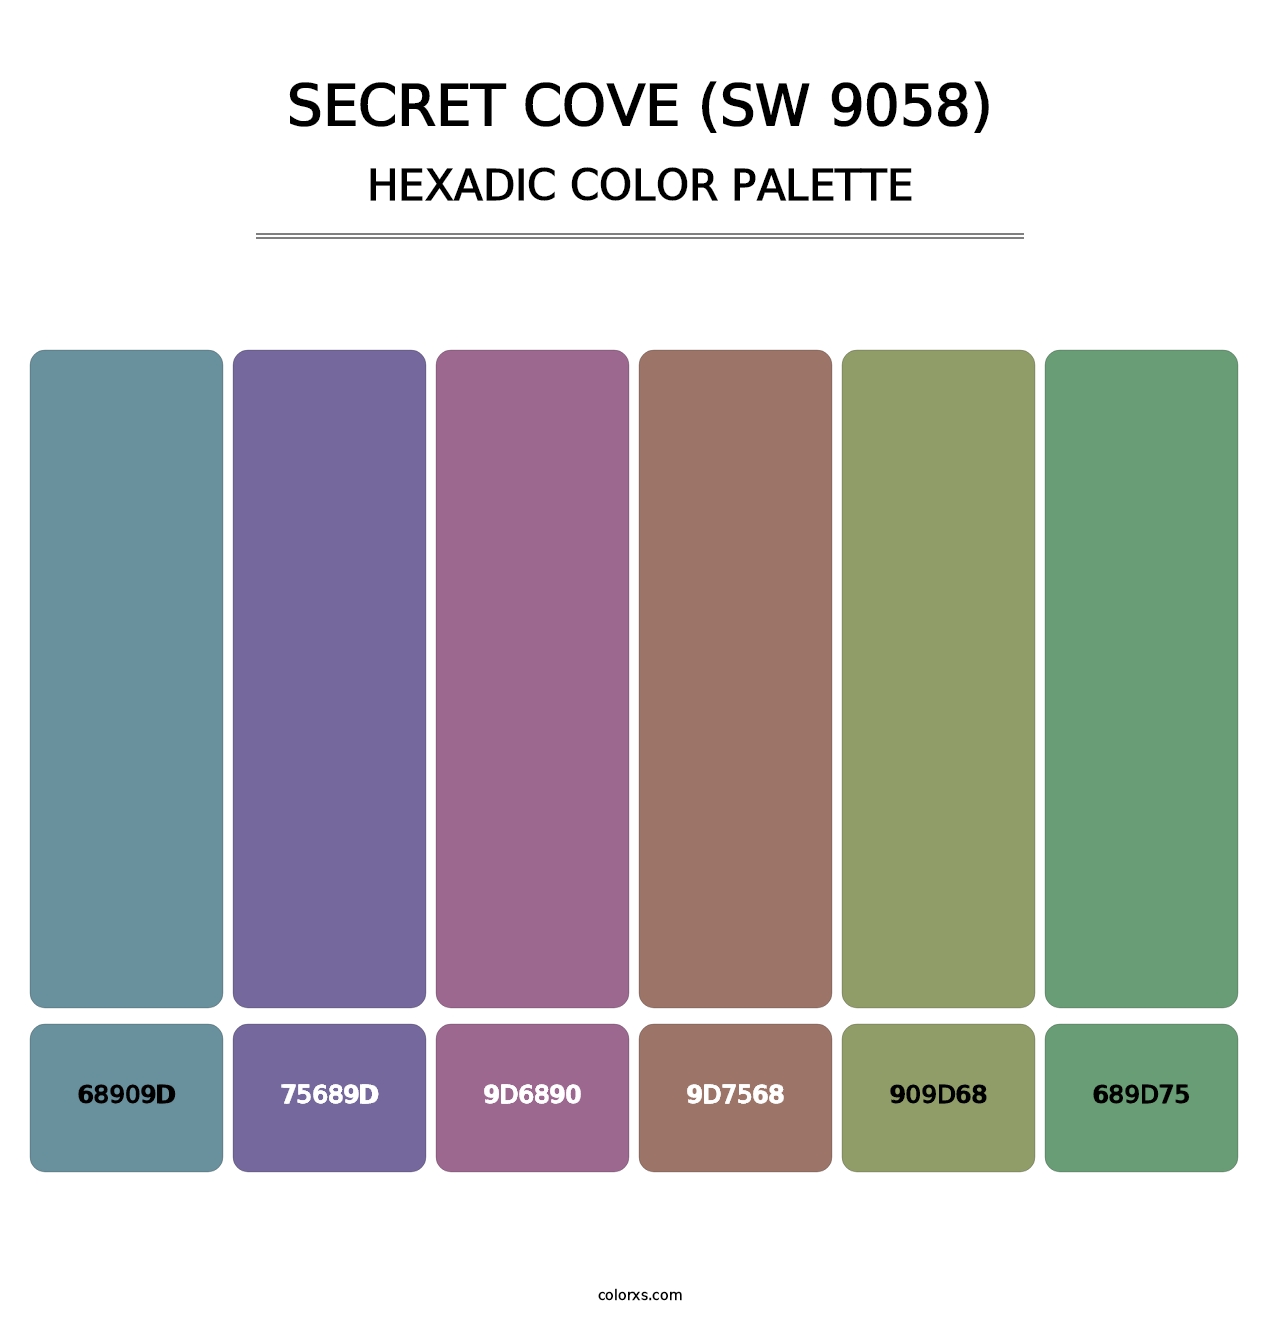 Secret Cove (SW 9058) - Hexadic Color Palette